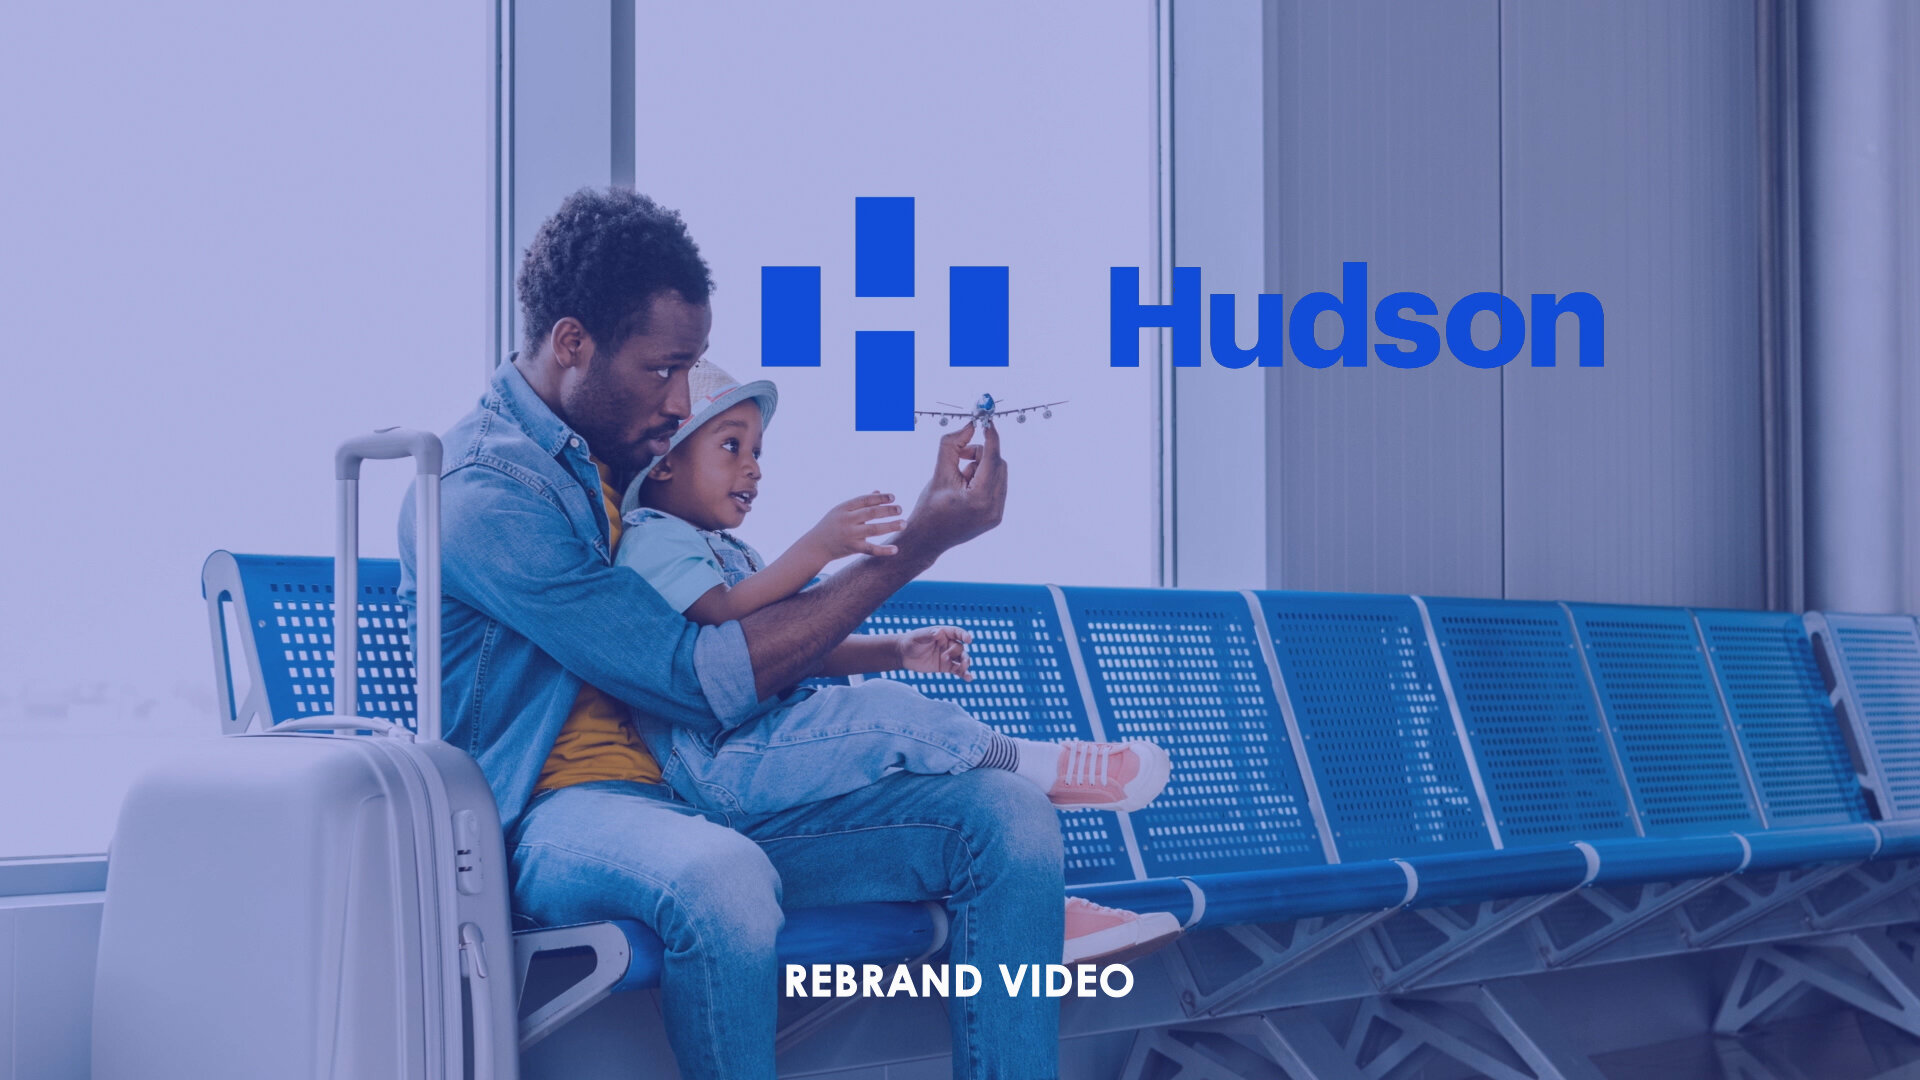 Hudson - Rebranding video